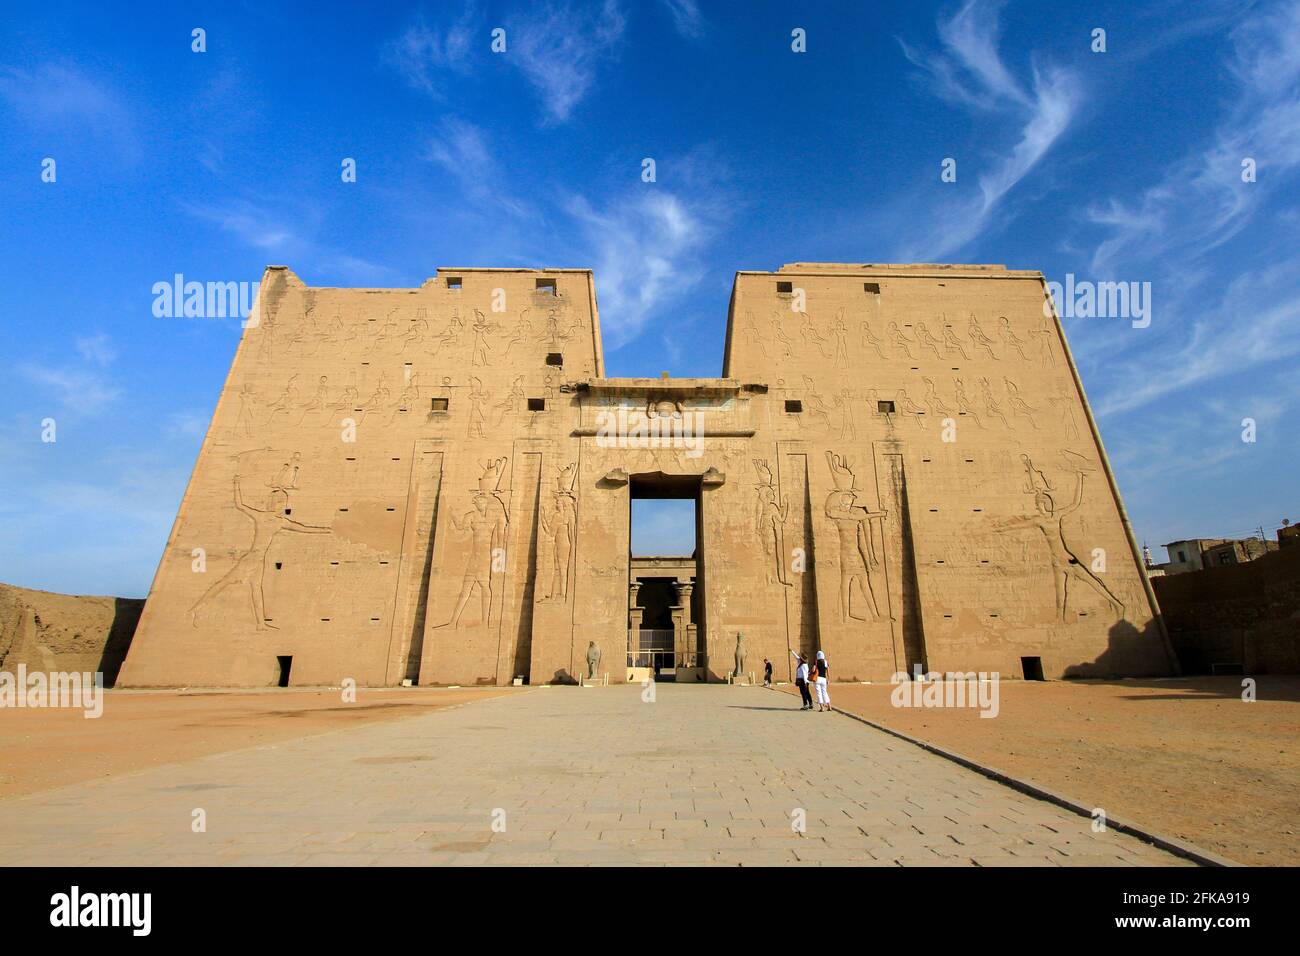 Main entrance to Temple of Edfu with blue sky, Edfu, Egypt Stock Photo